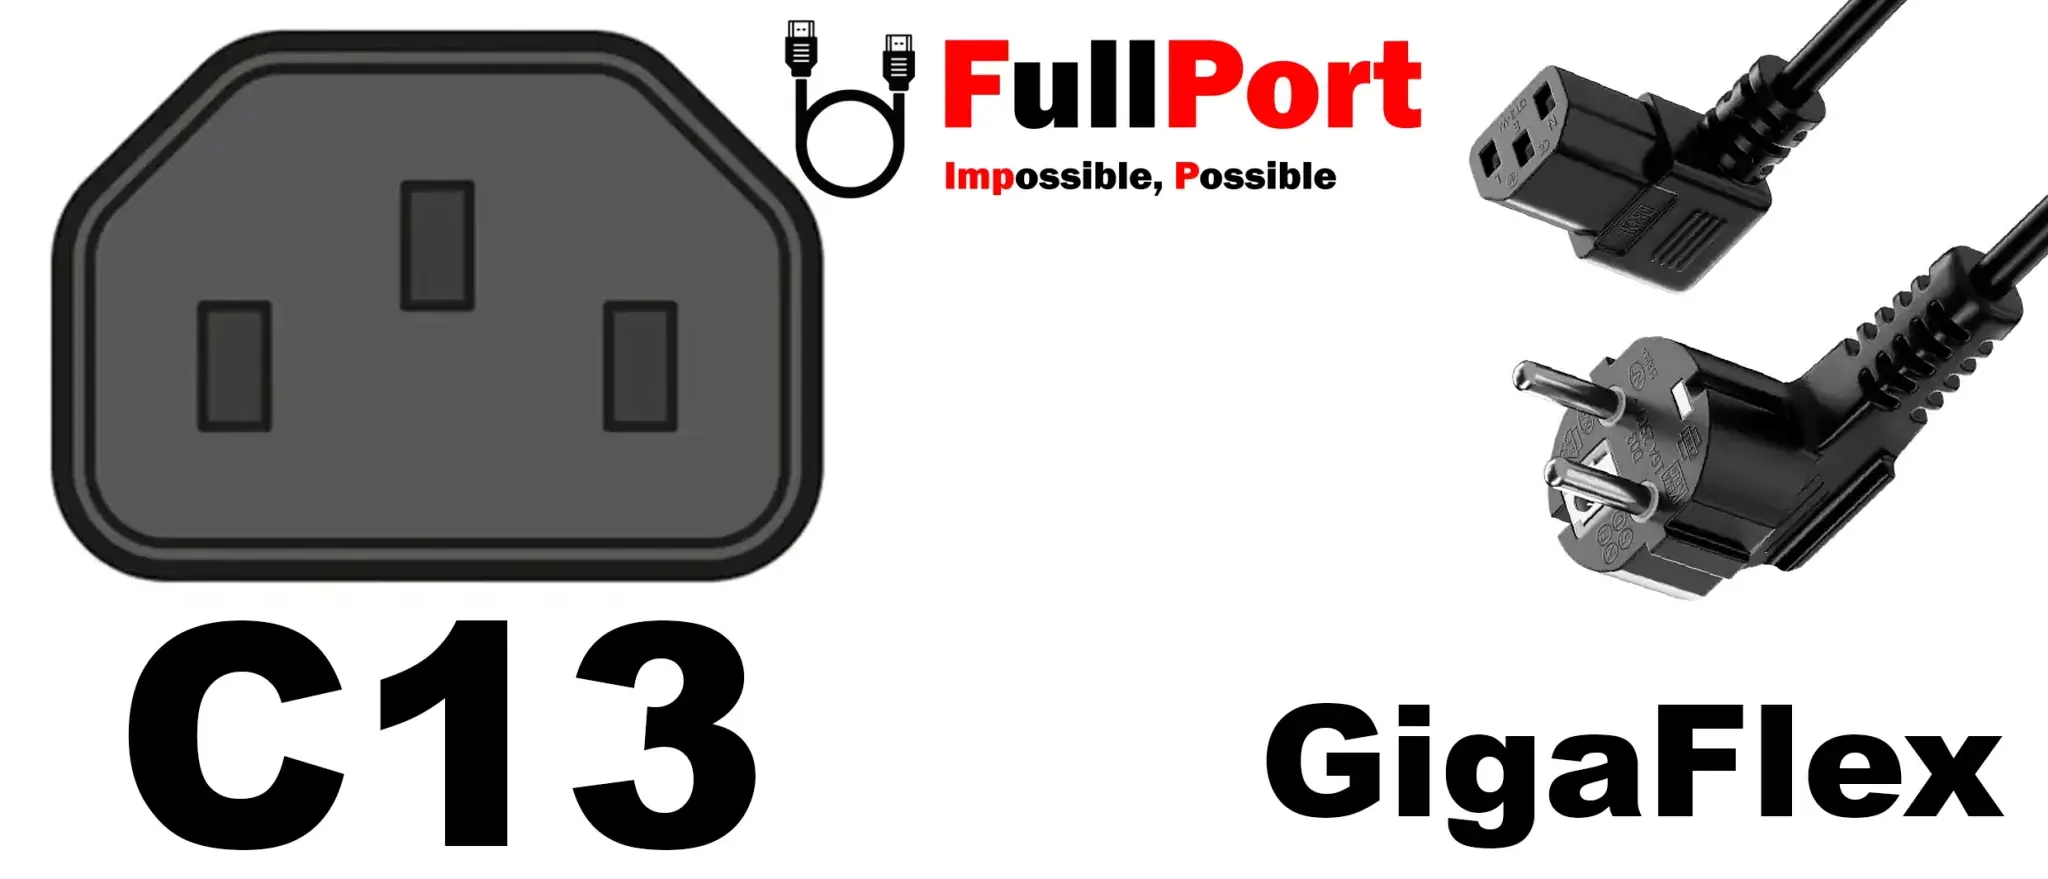 خرید کابل برق کیس EU-C13 گیگافلکس سوکت 90 درجه از فروشگاه اینترنتی فول پورت